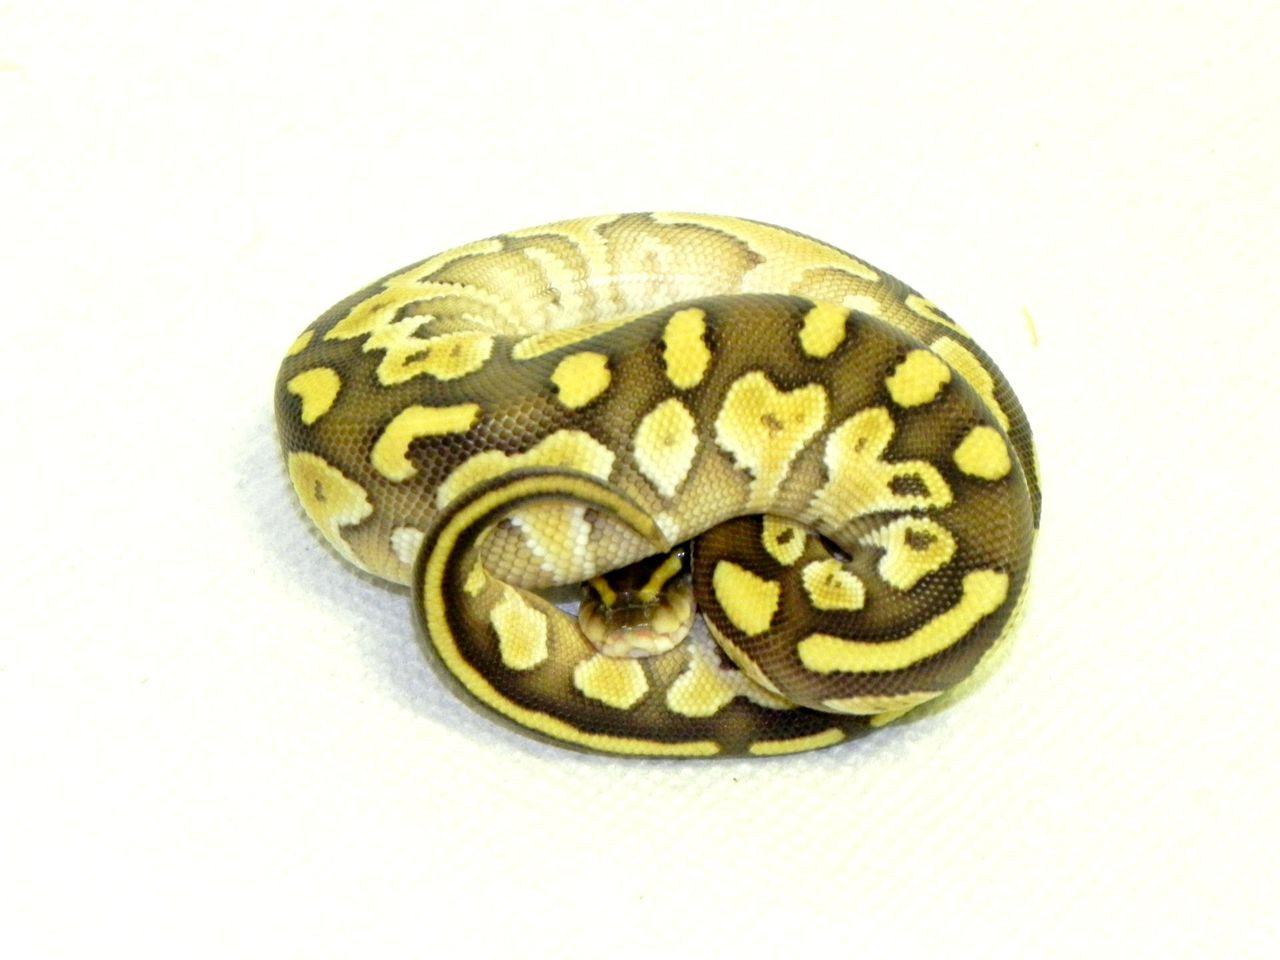 Northwest Reptiles - Butter Ball Python Description and Photos - Ball Python  breeder